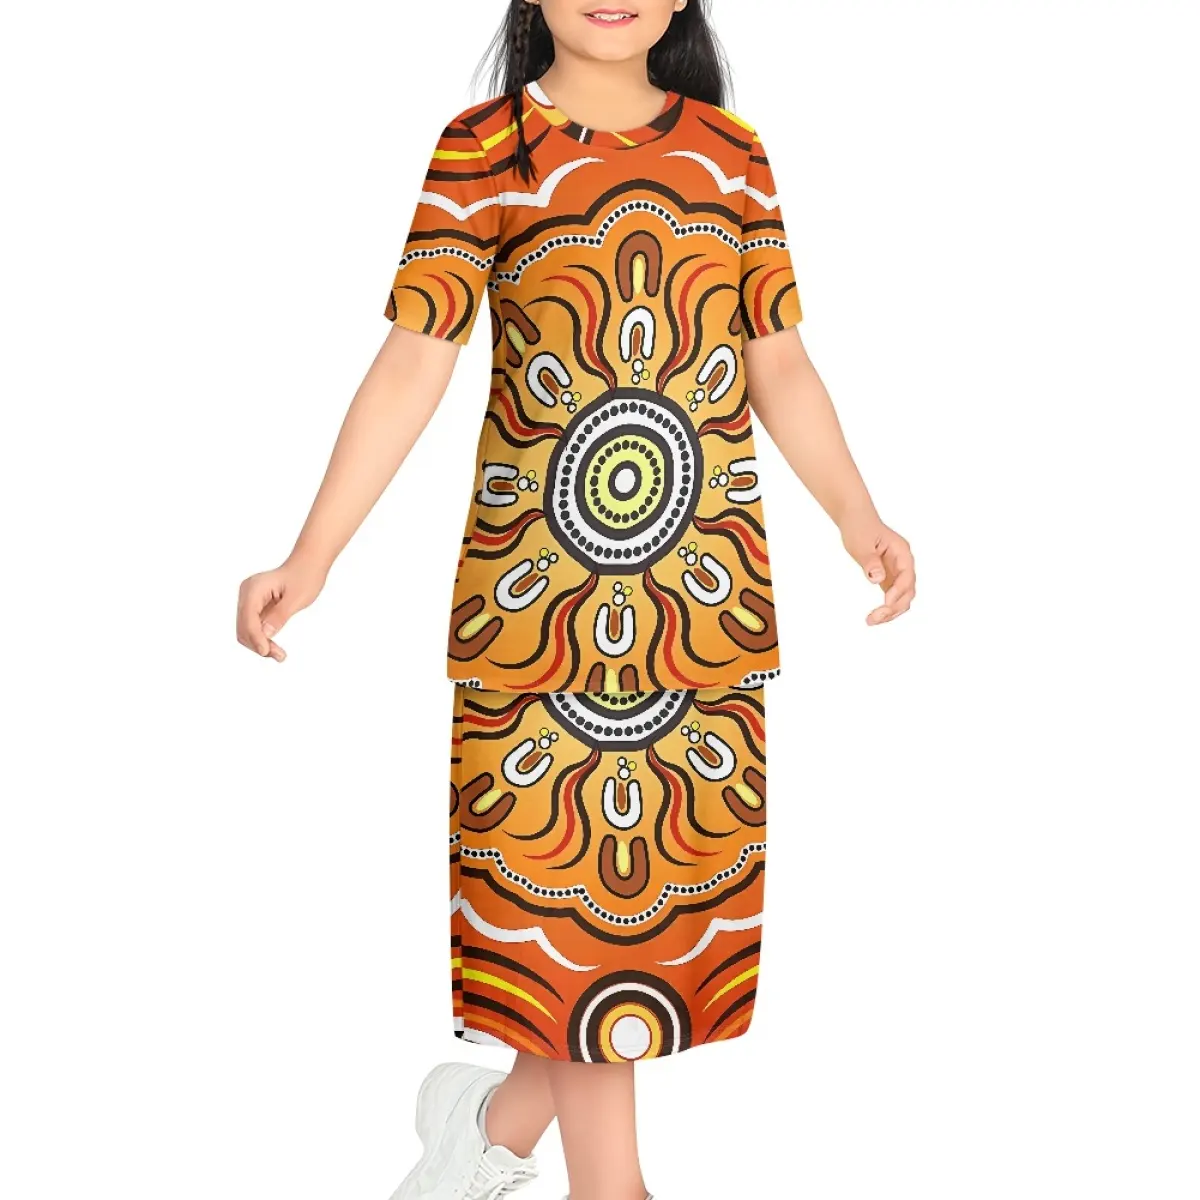 Vestido largo de manga corta cómodo con patrón de arte indígena australiano Puletasi personalizado para niña, vestido Maxi para vacaciones, escuela, playa, chico